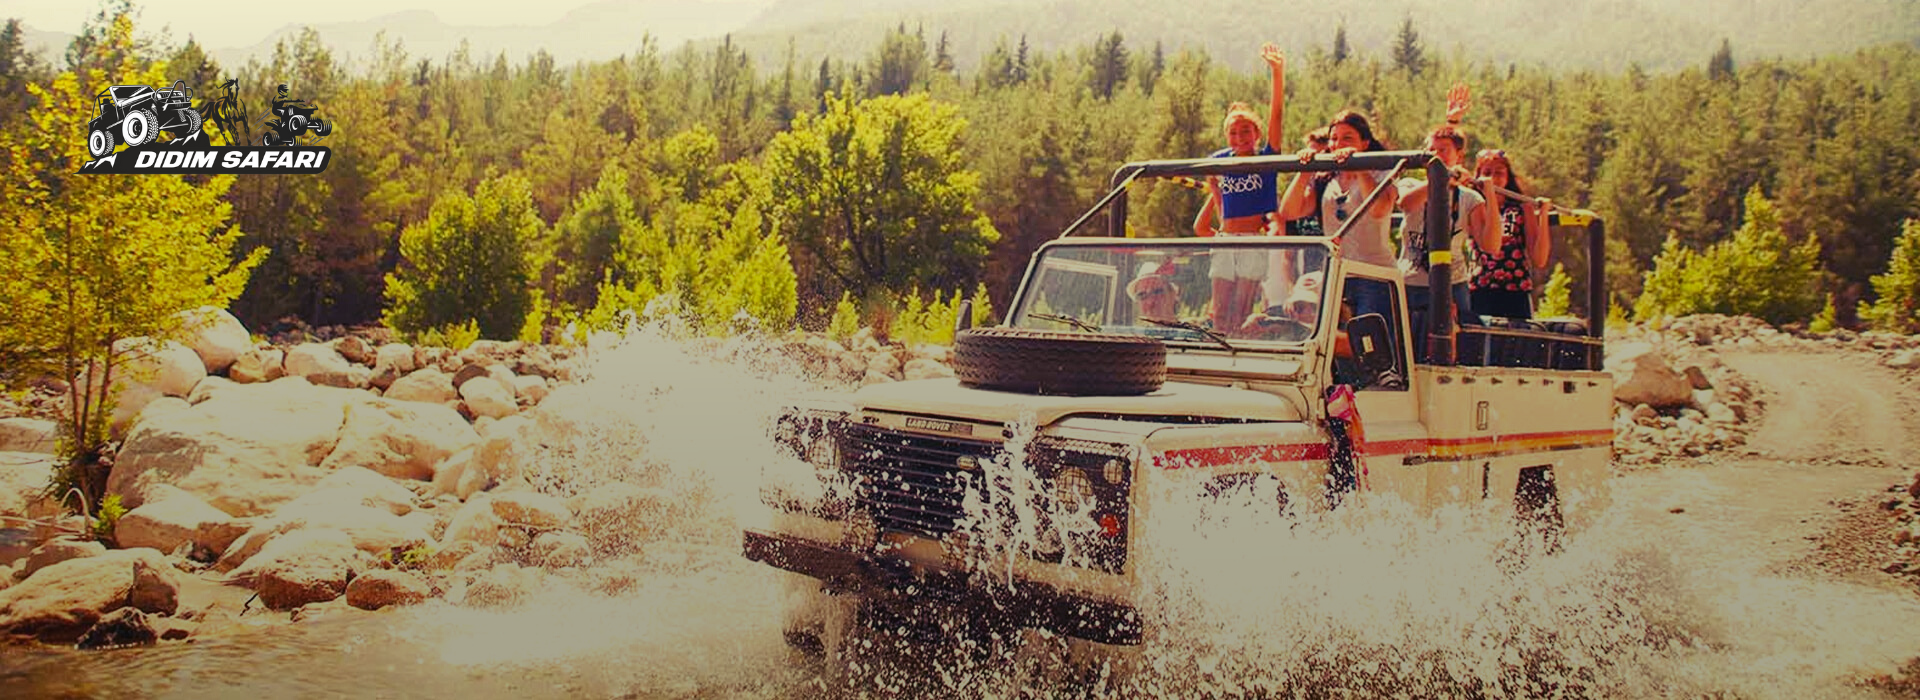 Suchen Sie dieses Mal pures Abenteuer in Ihrem Didem-Urlaub? Ein Abenteuer erwartet Sie in Form von Didem Jeep Safari.